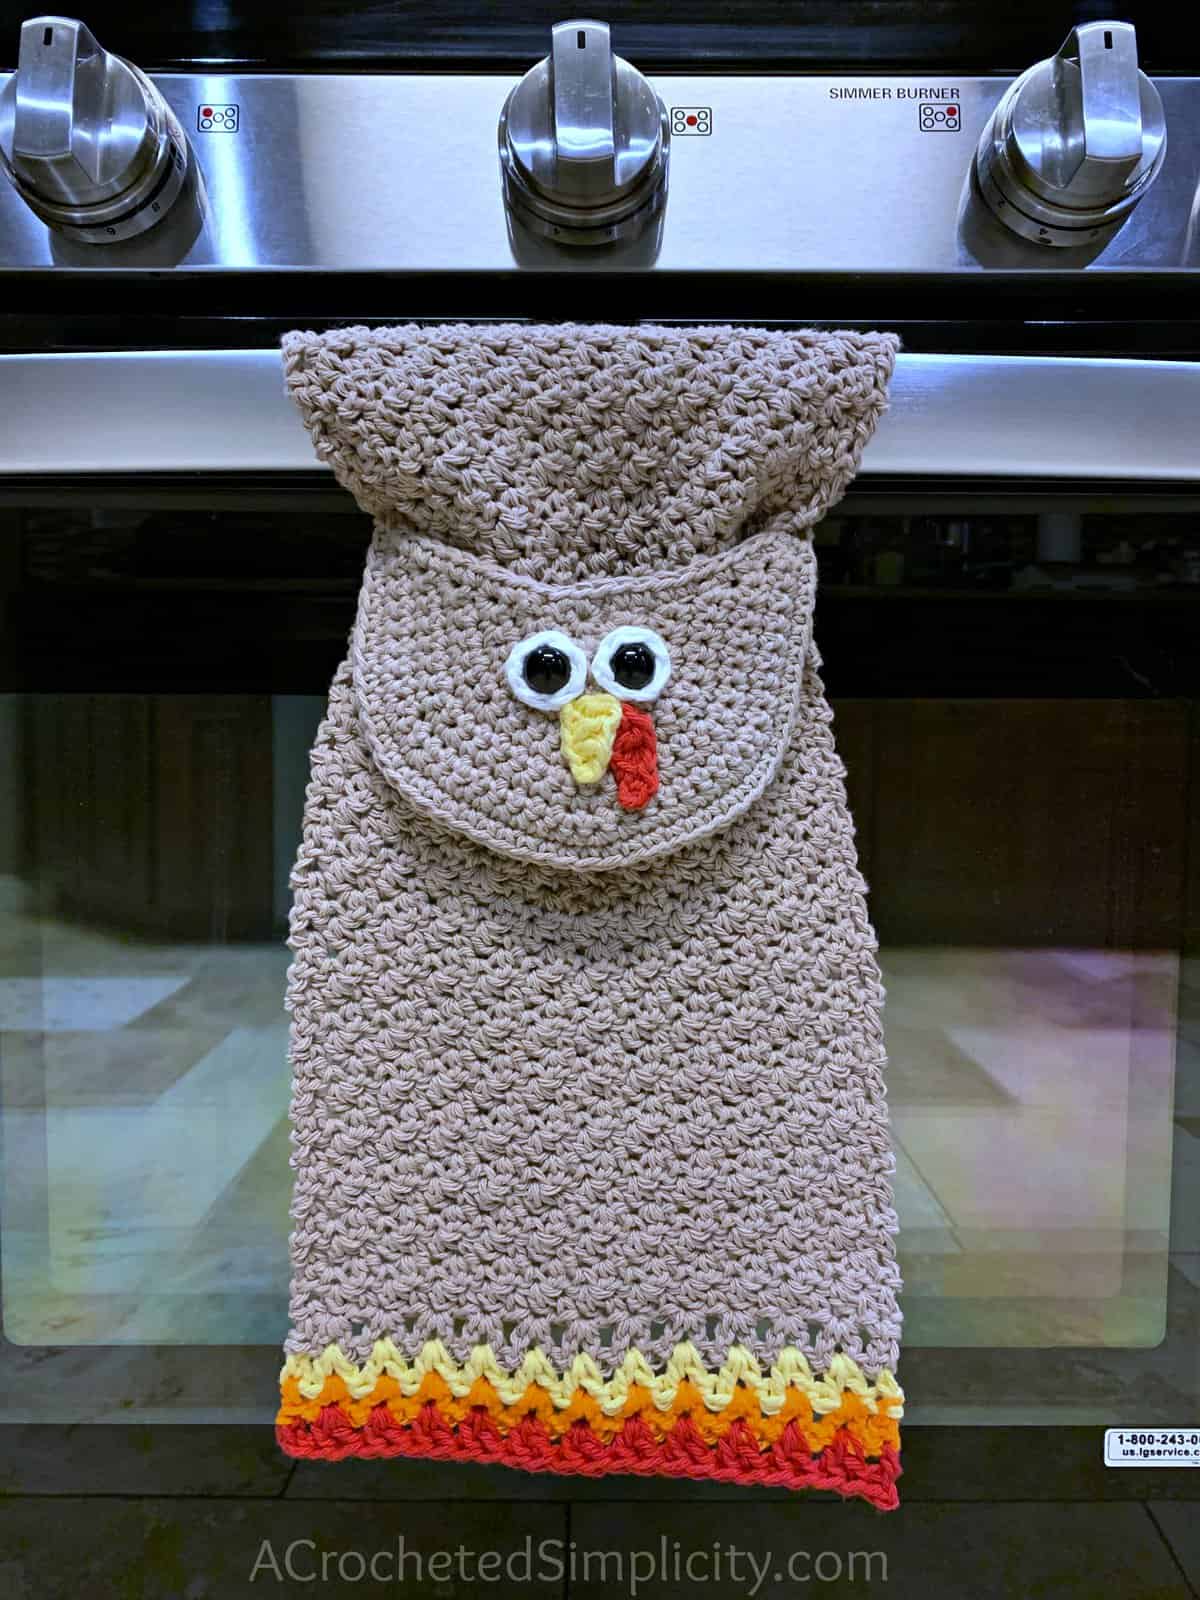 Free Crochet Pattern - Turkey Kitchen Towel by A Crocheted Simplicity . #turkey #crochettowel #crochettowelpattern #crochetdishtowel #crochet #freecrochetpattern #crochetturkey